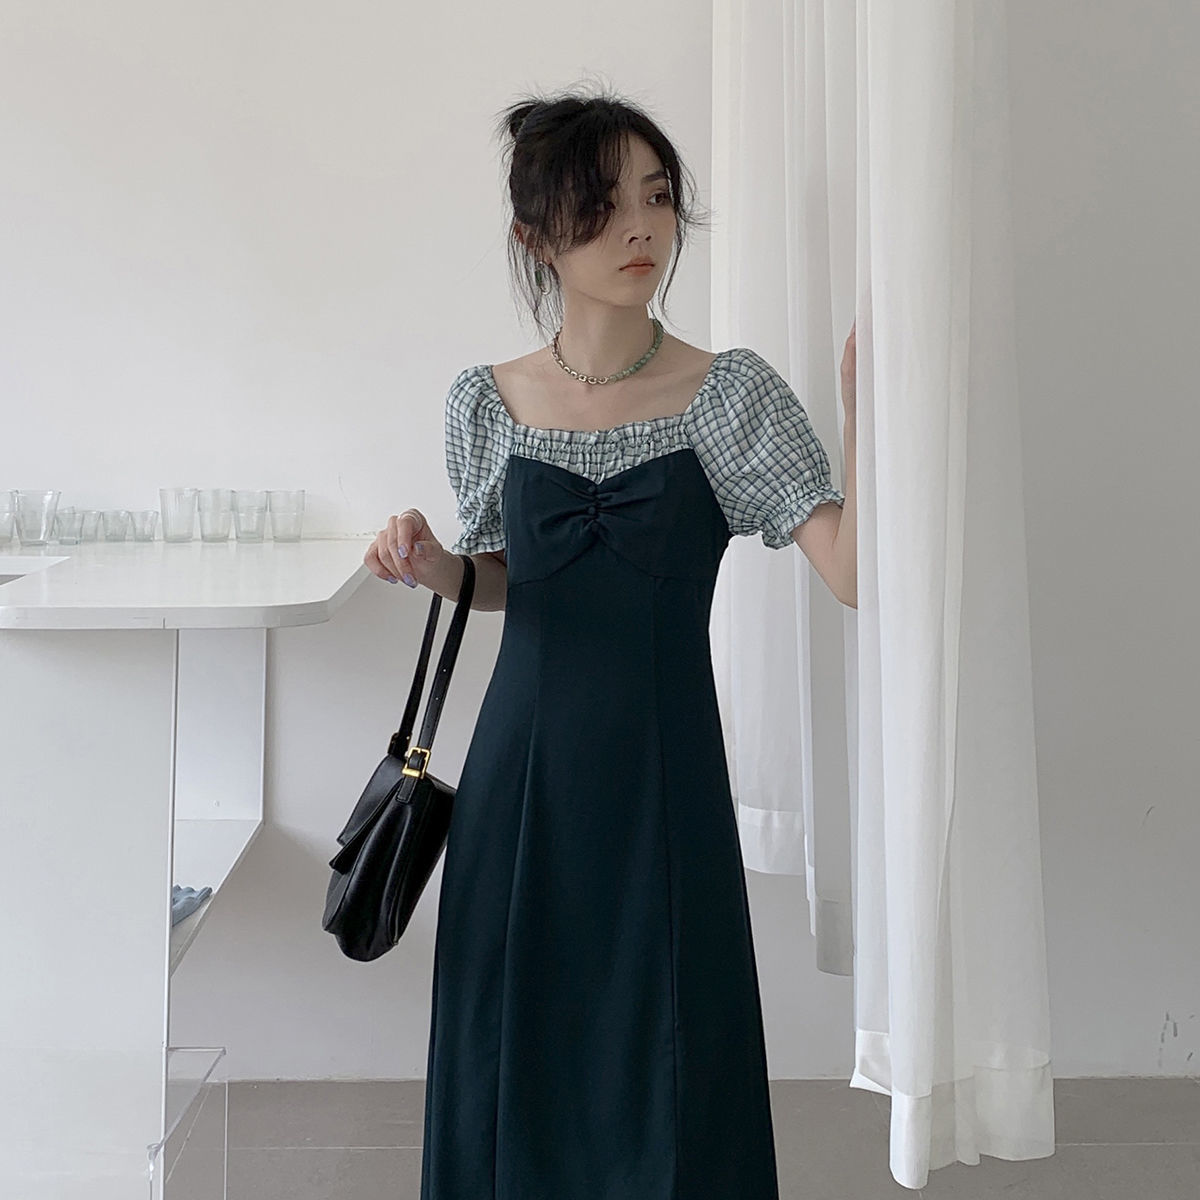 Đầm Tay Ngắn Màu Xanh Lá Phong Cách Retro Pháp